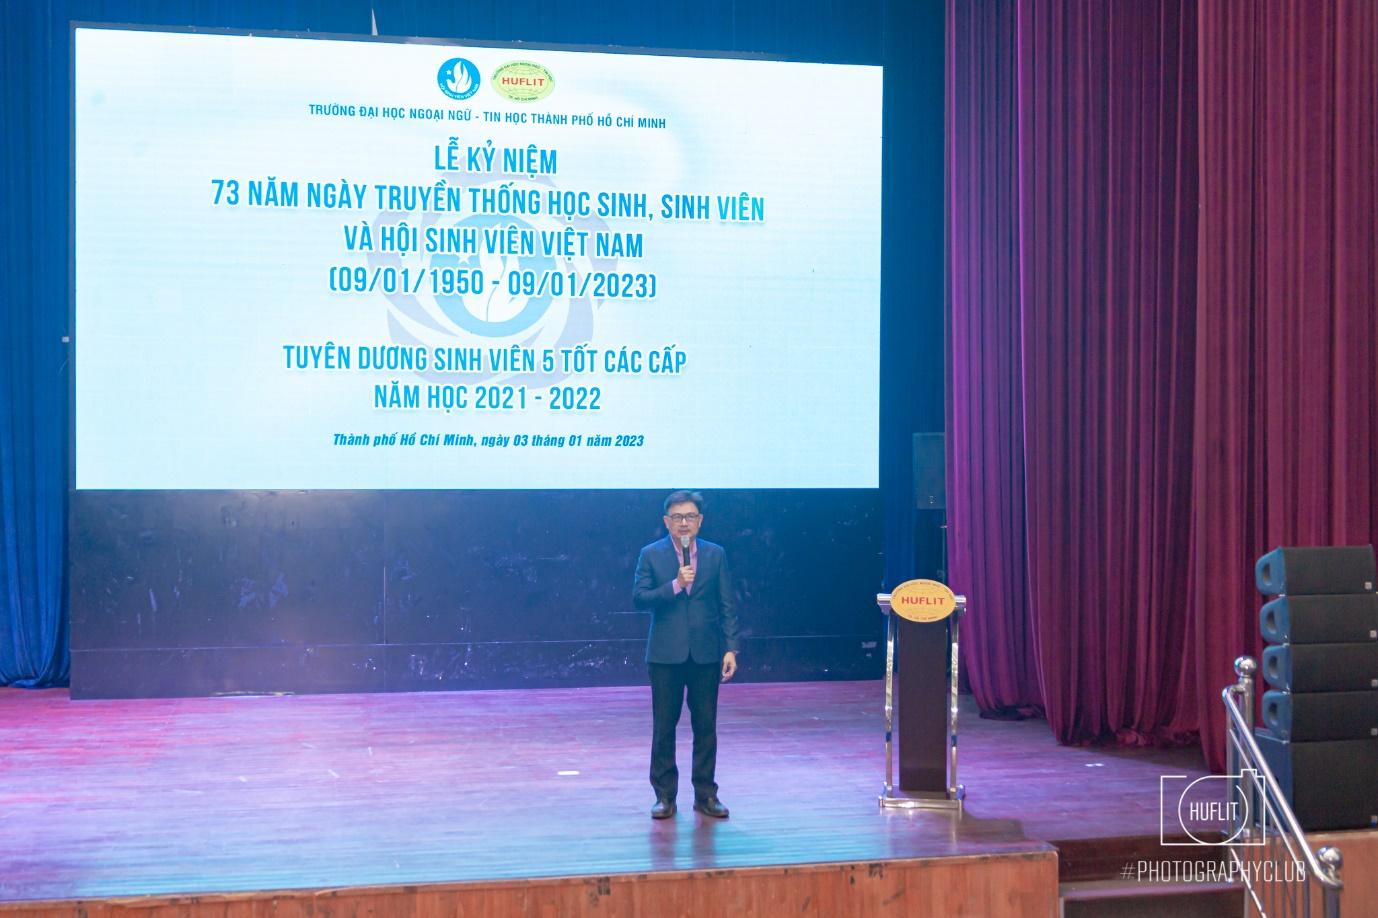 Thầy Nguyễn Anh Tuấn - Bí thư Đảng ủy, Hiệu trưởng HUFLIT phát biểu chúc mừng các gương sinh viên 5 tốt các cấp